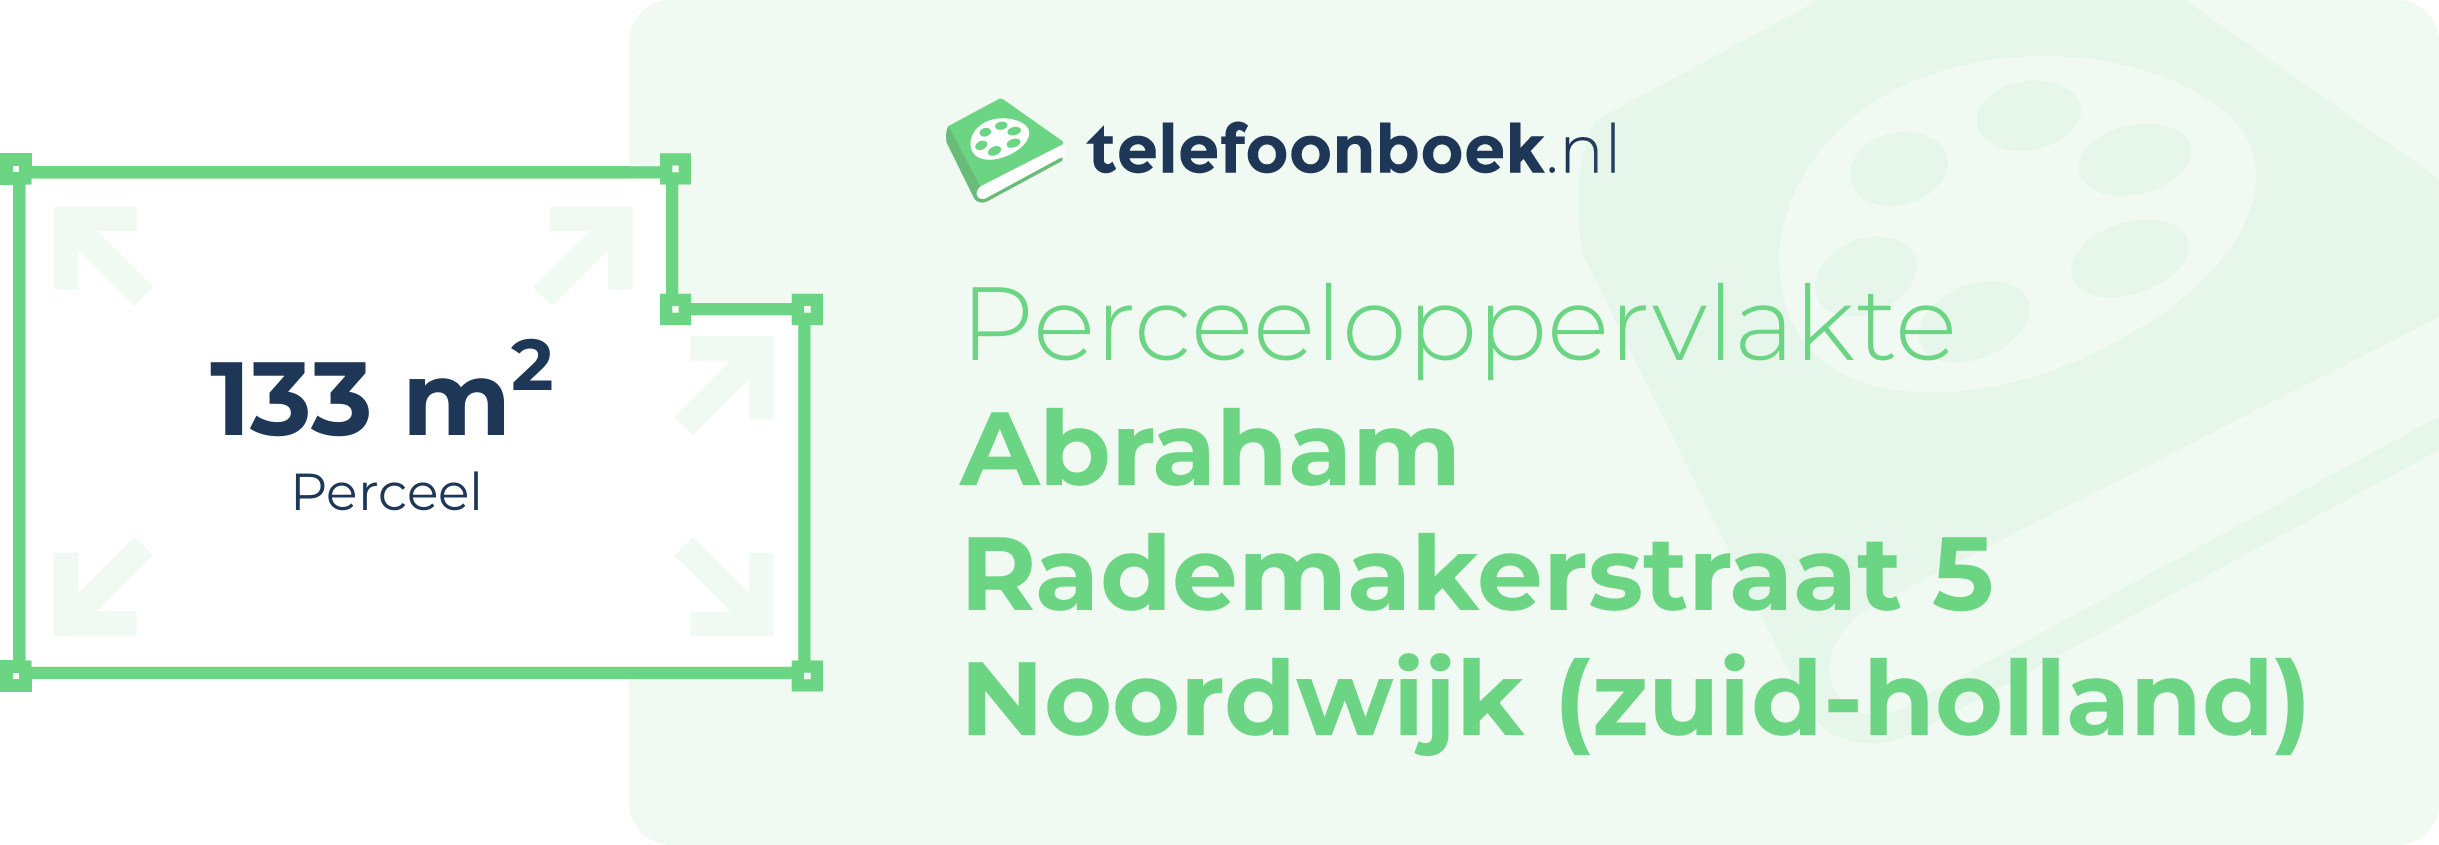 Perceeloppervlakte Abraham Rademakerstraat 5 Noordwijk (Zuid-Holland)